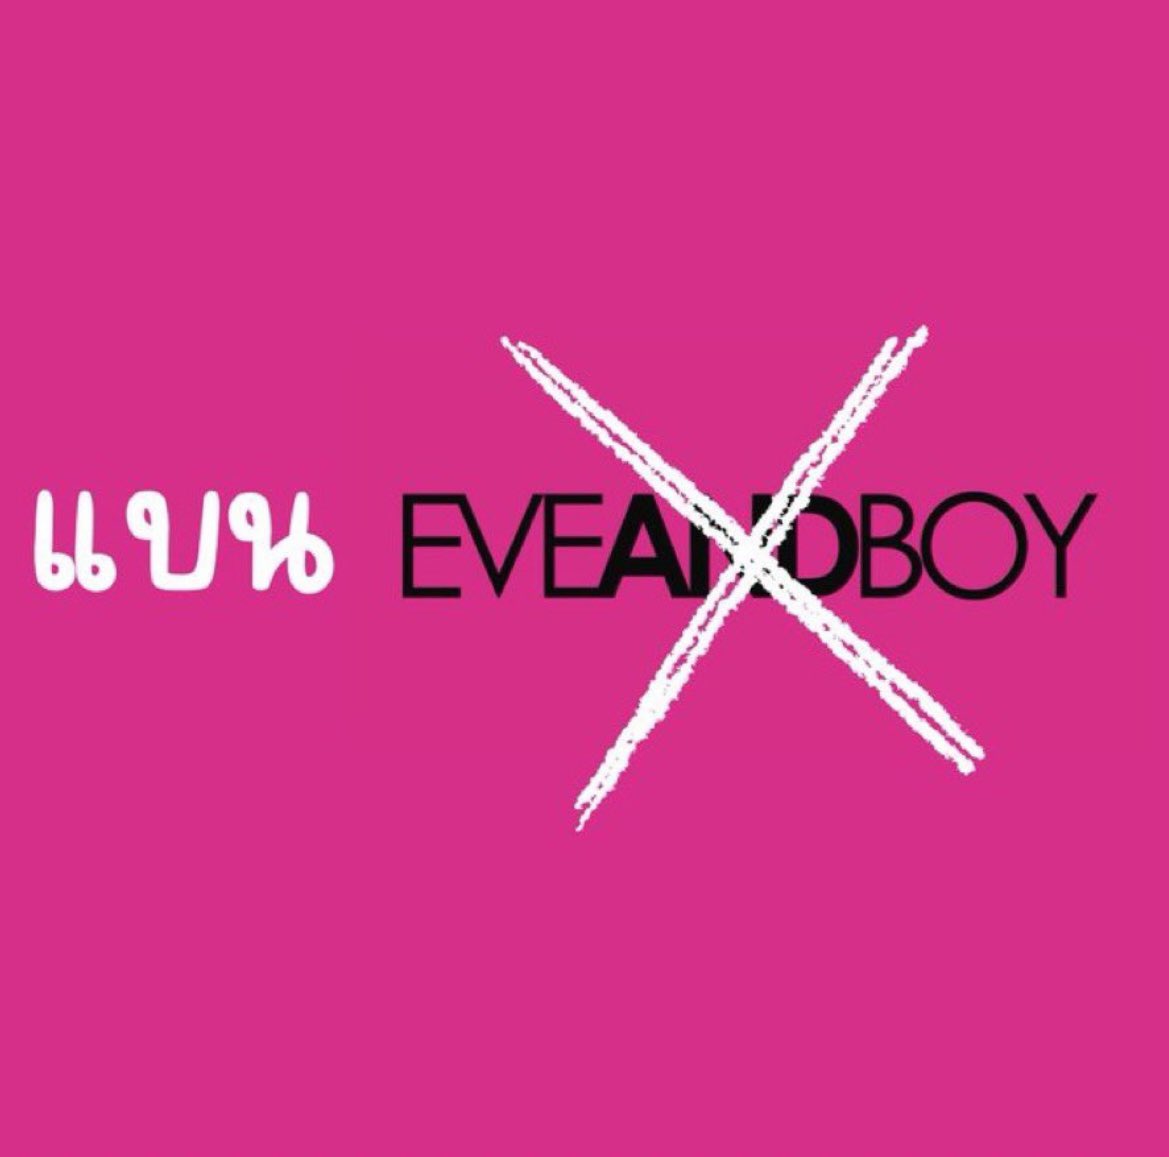 อย่าหยุด
#Eveandboyต้องชดใช้
#Eveandboyต้องรับผิดชอบ
#แบนEveandboy